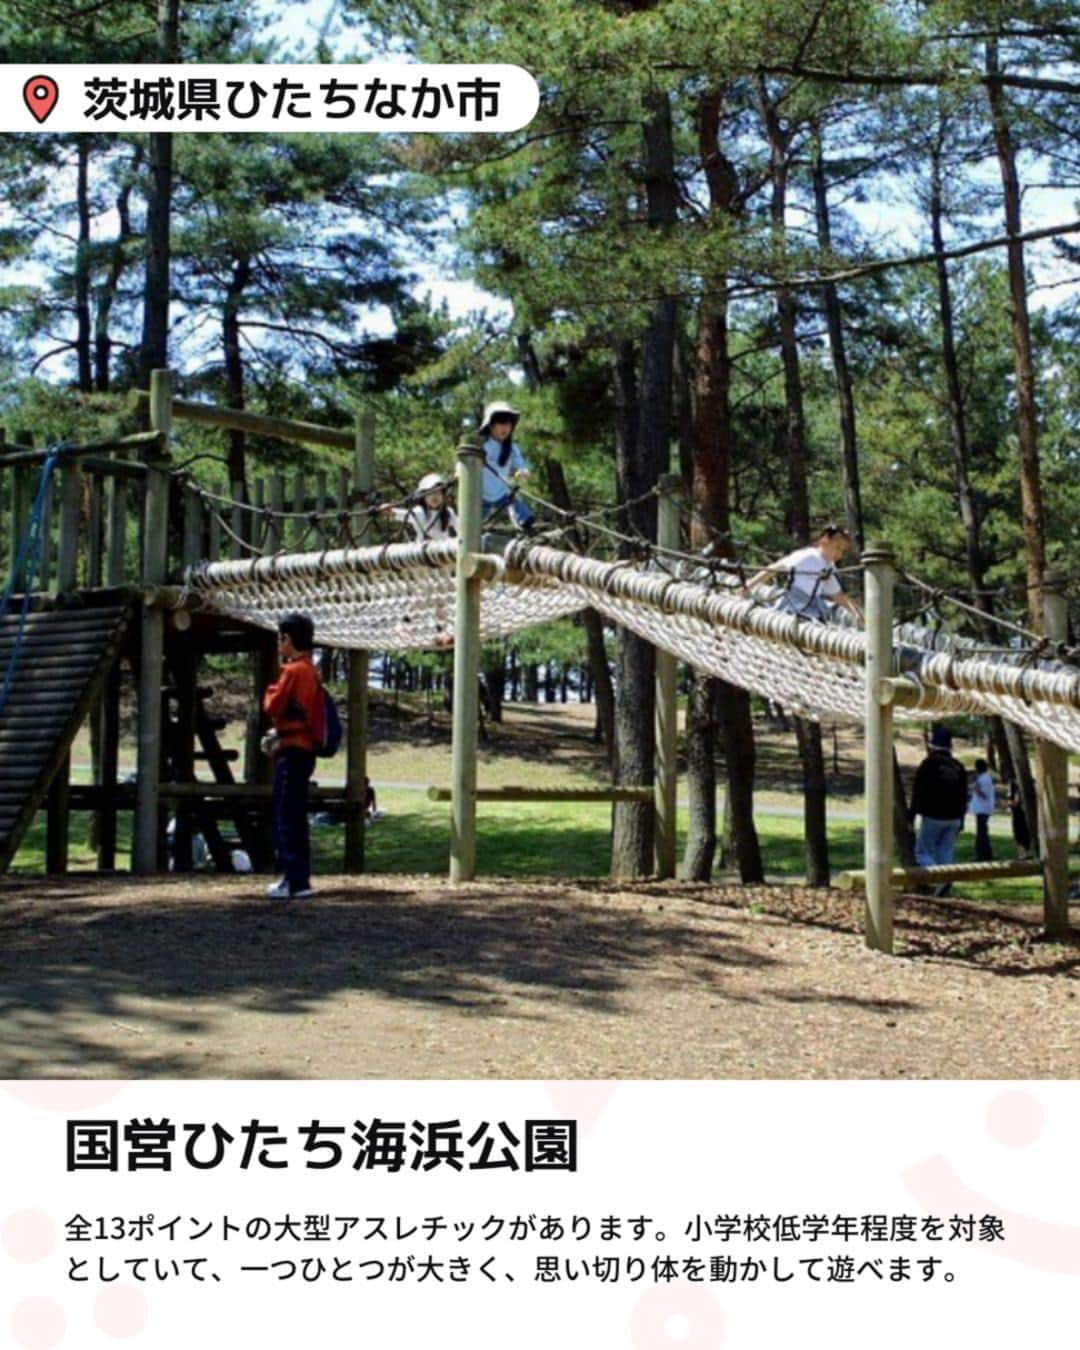 iko-yo（いこーよオフィシャル）さんのインスタグラム写真 - (iko-yo（いこーよオフィシャル）Instagram)「「関東 大型のアスレチックがある公園」　 今回ピックアップしたのは↓ ーーーーーーーーーーーーーーーーーー 📍 神奈川県愛甲郡愛川町 【神奈川県立あいかわ公園】 広大な敷地に自然と遊び場がたくさん集まった公園です。ネットのトンネルを登って頂上を目指す「巨大ツリー」や、高低差のある巨大迷路「壁の迷路」など、体を動かせる遊具が充実しています。アスレチック以外にも、人気のふわふわドームがある「子供広場」やダムの真下まで行ける汽車型のロードトレイン「愛ちゃん号」など、アトラクションがいっぱいです。  📍 埼玉県朝霞市 【滝の根公園】 住宅街にありながら豊かな自然に恵まれた公園です。丘の傾斜を利用して作られたアスレチックコースは高低差があり思い切り体を動かして遊べるものばかりです。ほかにも、一気にすべり降りるロングすべり台があり、小さな子供から小学生まで、多くの子供でにぎわいます。  📍 埼玉県比企郡滑川町 【国営武蔵丘陵森林公園】 東京ドーム約65個分の広大な敷地に、豊かな自然と遊び場が詰まった公園です。 丸太の橋で川を渡る「まるたつりばし」、大型の「ピラミッドロープ」、さまざまな仕掛けが続く「くうちゅうさんぽ」、クライミングウォールの「かべのぼり」など、たくさんの遊具がそろいます。ほかにも、ボール遊びが楽しめる芝生広場や家族で楽しめるサイクリングコースも人気です。  📍 埼玉県川越市 【伊佐沼公園】 伊佐沼に隣接する水と緑の景色が楽しめる公園です。小さな子供から楽しめる小型の複合アスレチックもあるので、きょうだい一緒に楽しめます。  📍 茨城県ひたちなか市 【国営ひたち海浜公園】 広大な敷地にフラワーパークや遊園地、スポーツ・アウトドア施設など、たくさんの遊び場が集まります。 小さな子供から楽しめる卵型遊具がや、ふわふわドーム、ボール遊びも楽しめる広大な芝生広場「大草原」、「水遊び広場」など、ファミリーに人気のスポットがいっぱい。 中学生以下は無料で入園でき、1日中たっぷり遊べます。  📍茨城県古河市 【ネーブルパーク】 さまざまな自然体験やアウトドア遊びを満喫できる公園です。 アスレチック広場のほかにも、海をテーマにした遊具が人気の「子供の広場・船遊具」や、全長約170mの「地下迷路」、思い切り走り回れる「芝生広場」、つり堀、ミニSLなど、家族連れにうれしい遊び場が豊富。キャンプやBBQもできるので、アウトドアデビューにもおすすめです。  ※2023年4月12日時点の情報です。 最新の情報は公式HPや「いこーよ」サイトでご確認ください。  ーーーーーーーーーーーーーーーーーーー おでかけ情報量は日本最大級！ 子どもとお出かけ情報サイト「いこーよ」 「親子でおでかけしたい場所」をご紹介させていただいています！  お子さんとのおでかけの思い出の写真を、このアカウントをフォローの上#いこーよ をつけてぜひ投稿してください。魅力的な写真は、いこーよ公式SNSで紹介させていただきます！  募集中タグ＃いこーよ  「子どもと行きたい！」と思ったら保存が便利！ プロフィールのURLから「いこーよ」のサイトに行くと、他の投稿やオトクな情報などが載っています♪ ☞ @ikoyo_odekake  #いこーよ #お出かけ #おでかけ #お出かけスポット #子育て #こどものいる暮らし #子連れスポット #いこーよお出かけ部 #埼玉ママ#埼玉観光#埼玉旅行#茨城ママ#茨城観光#茨城旅行#公園#埼玉公園#茨城公園#神奈川県立あいかわ公園#滝の根公園#国営武蔵丘陵森林公園#伊佐沼公園#国営ひたち海浜公園」4月16日 19時01分 - ikoyo_odekake